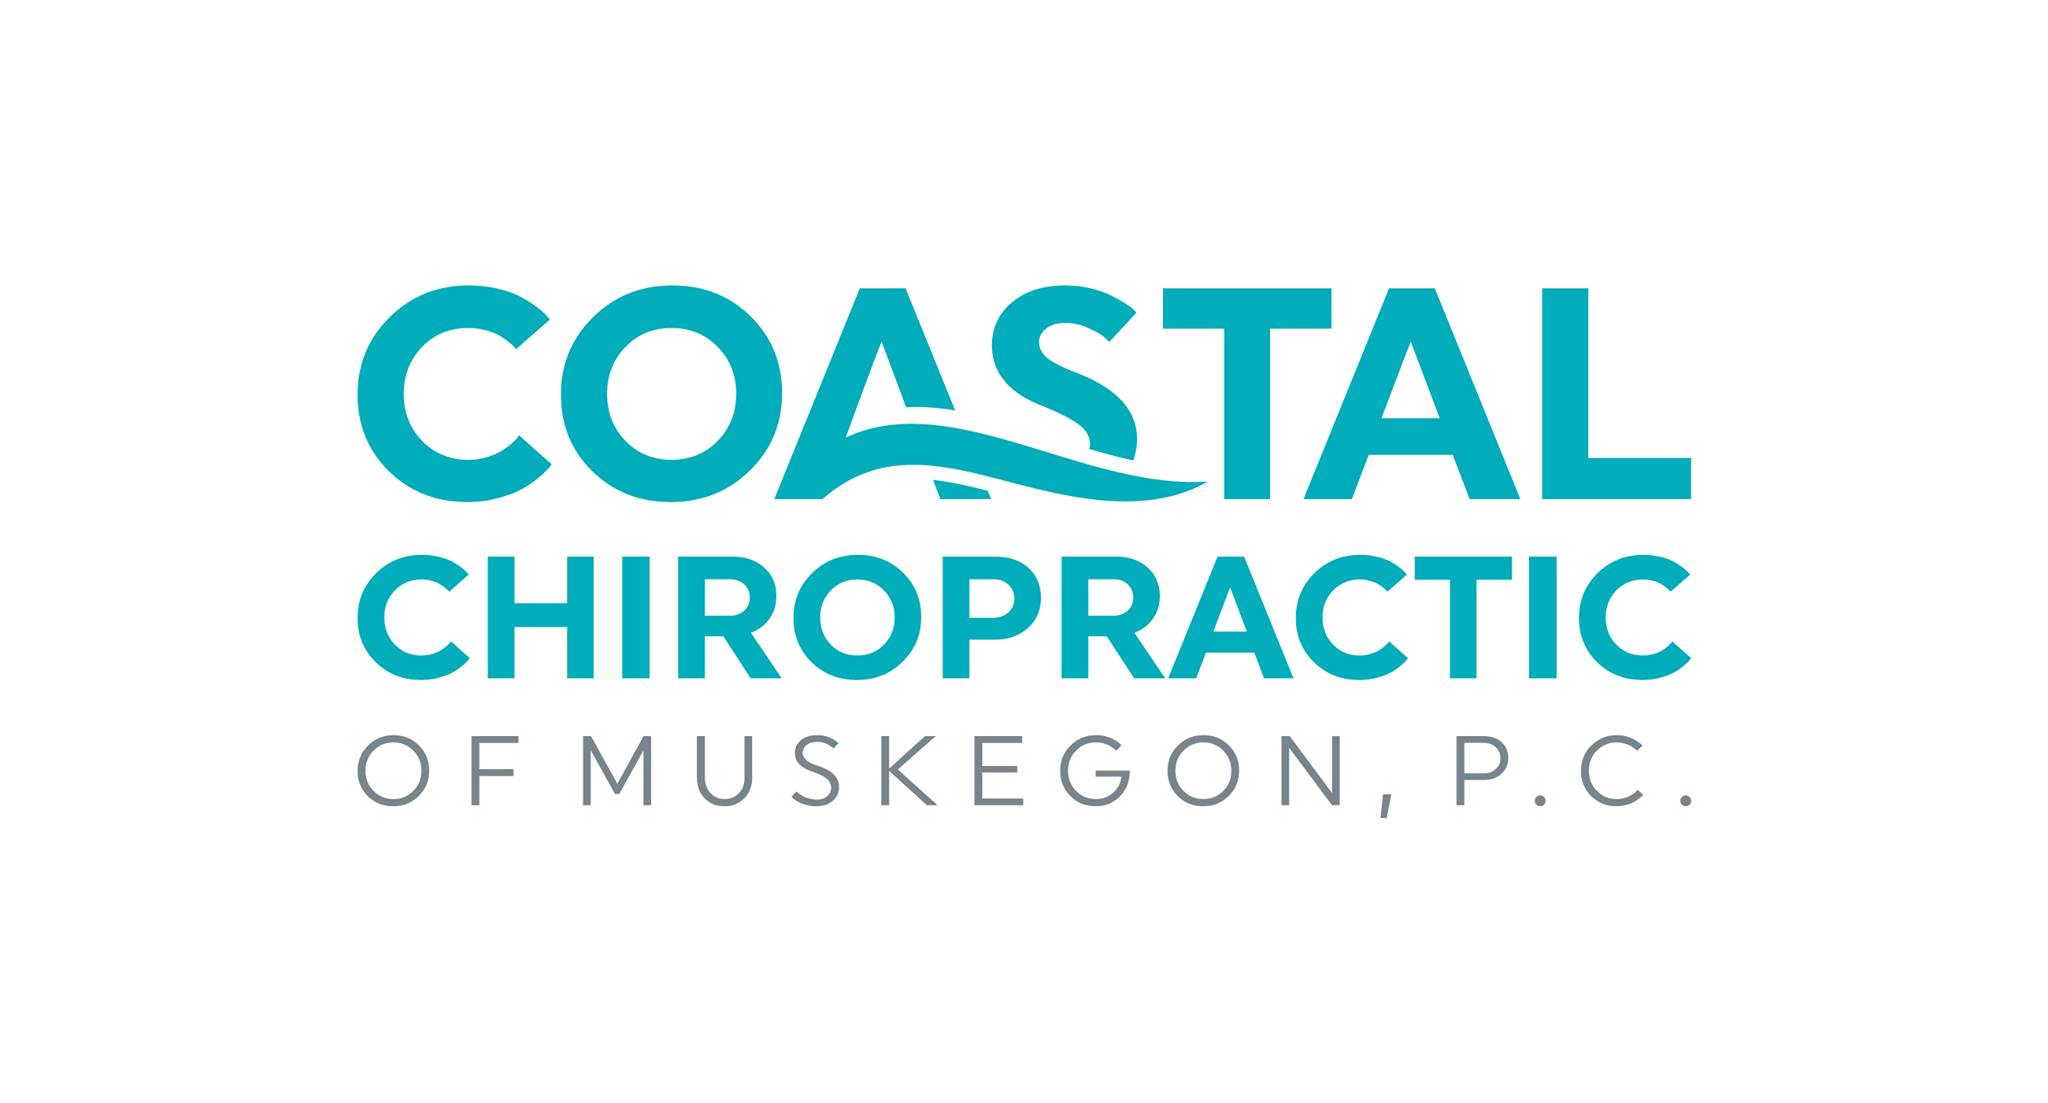 Coastal Chiropractic of Muskegon